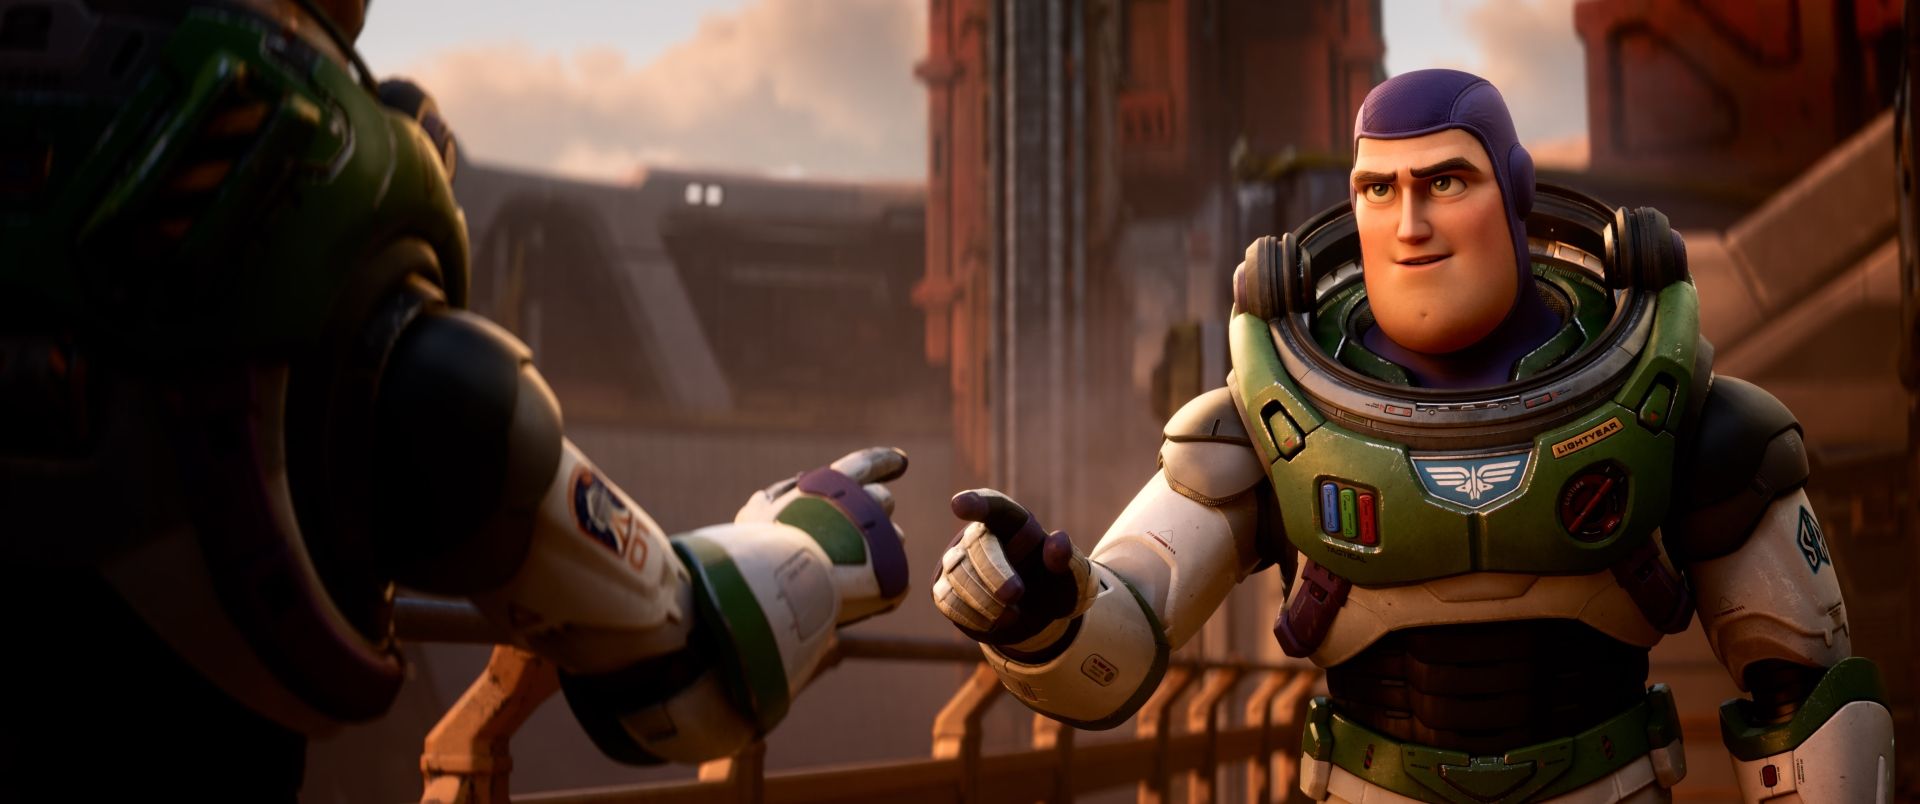 Lightyear, la recensione: la Pixar in versione action conquista